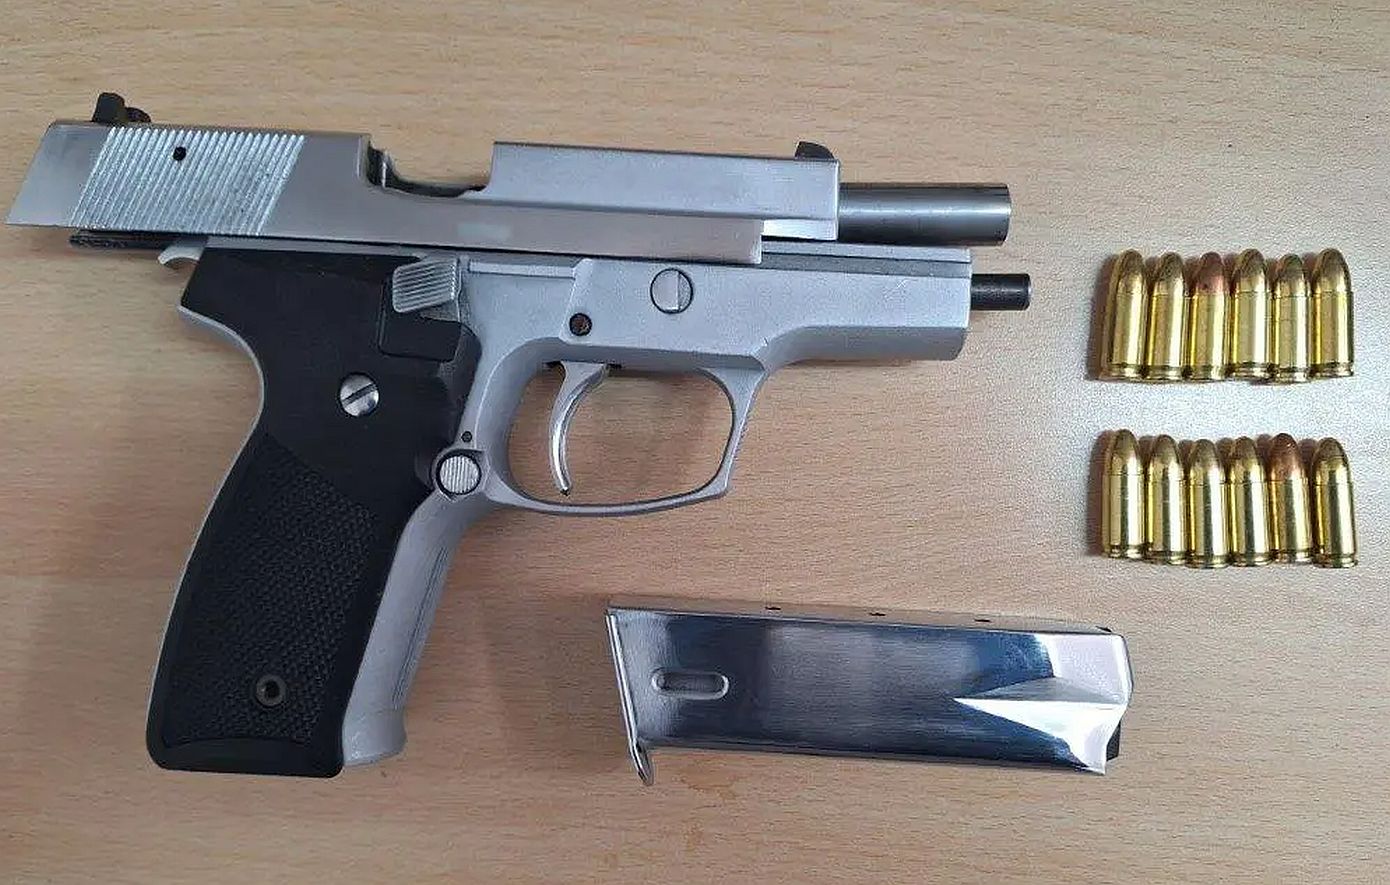 Με αυτό το πιστόλι ο 40χρονος άνοιξε πυρ στο μπαρ στο Κολωνάκι &#8211; Είναι σεσημασμένος για ληστεία και όπλα